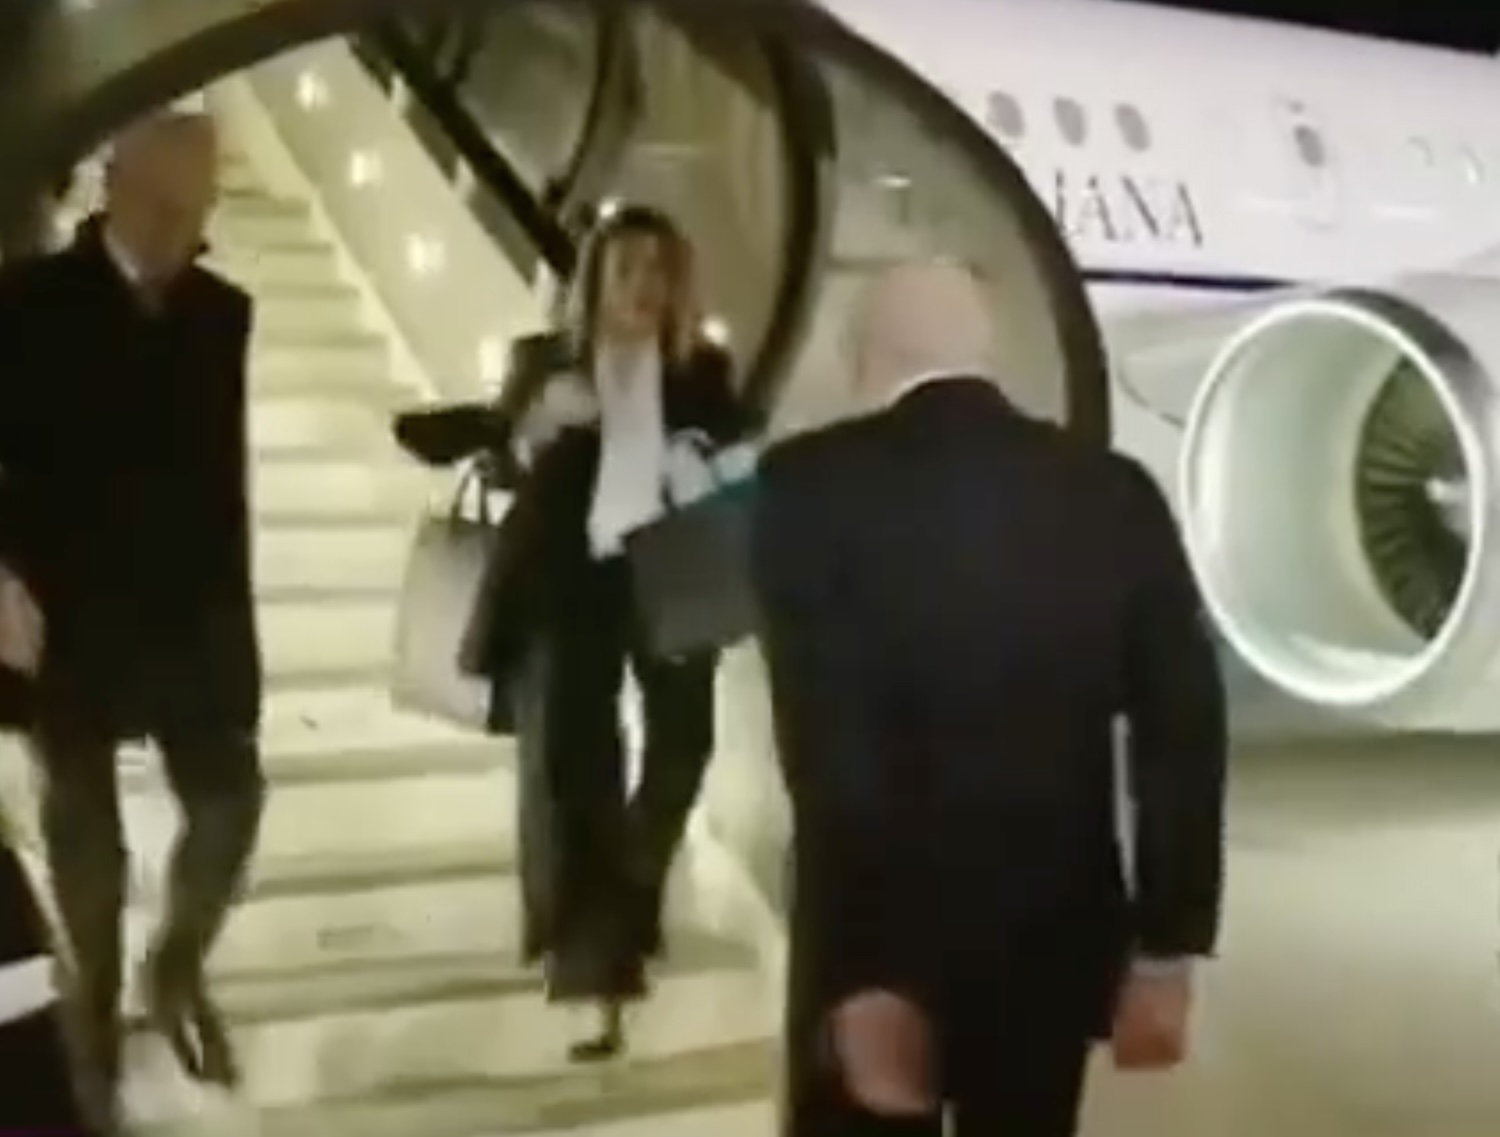 Gaffe del premier libanese all’aeroporto di Beirut, accoglie la segretaria e la scambia per Giorgia Meloni – Il video